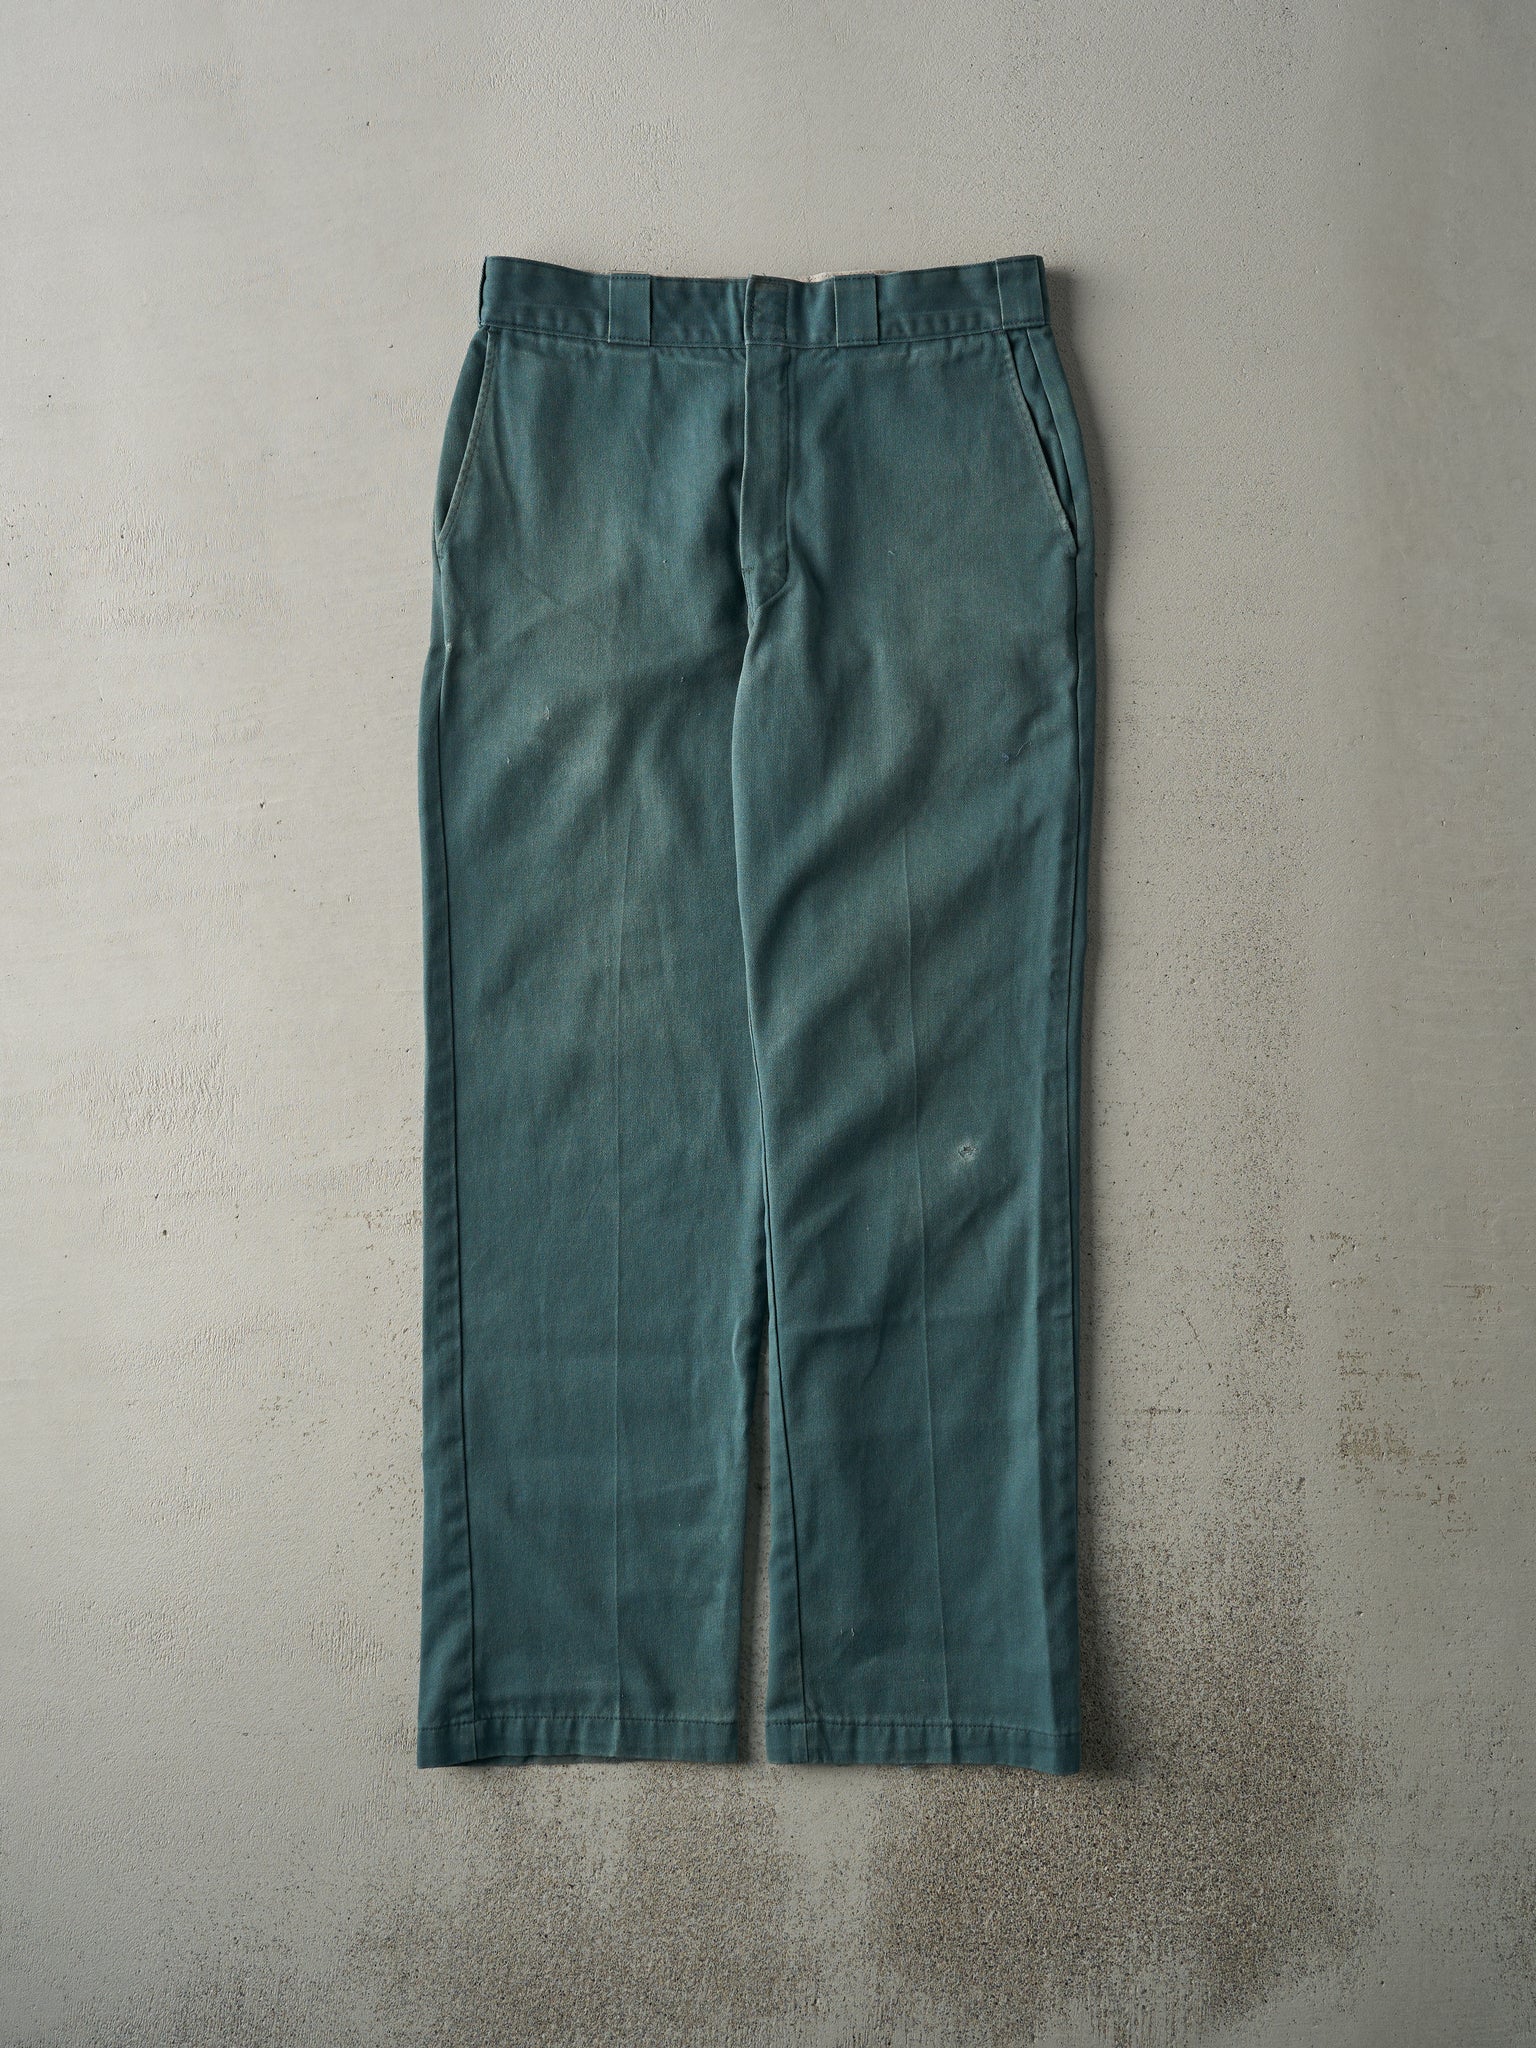 Vintage 90s Green Dickies Work Pants (32x31.5)